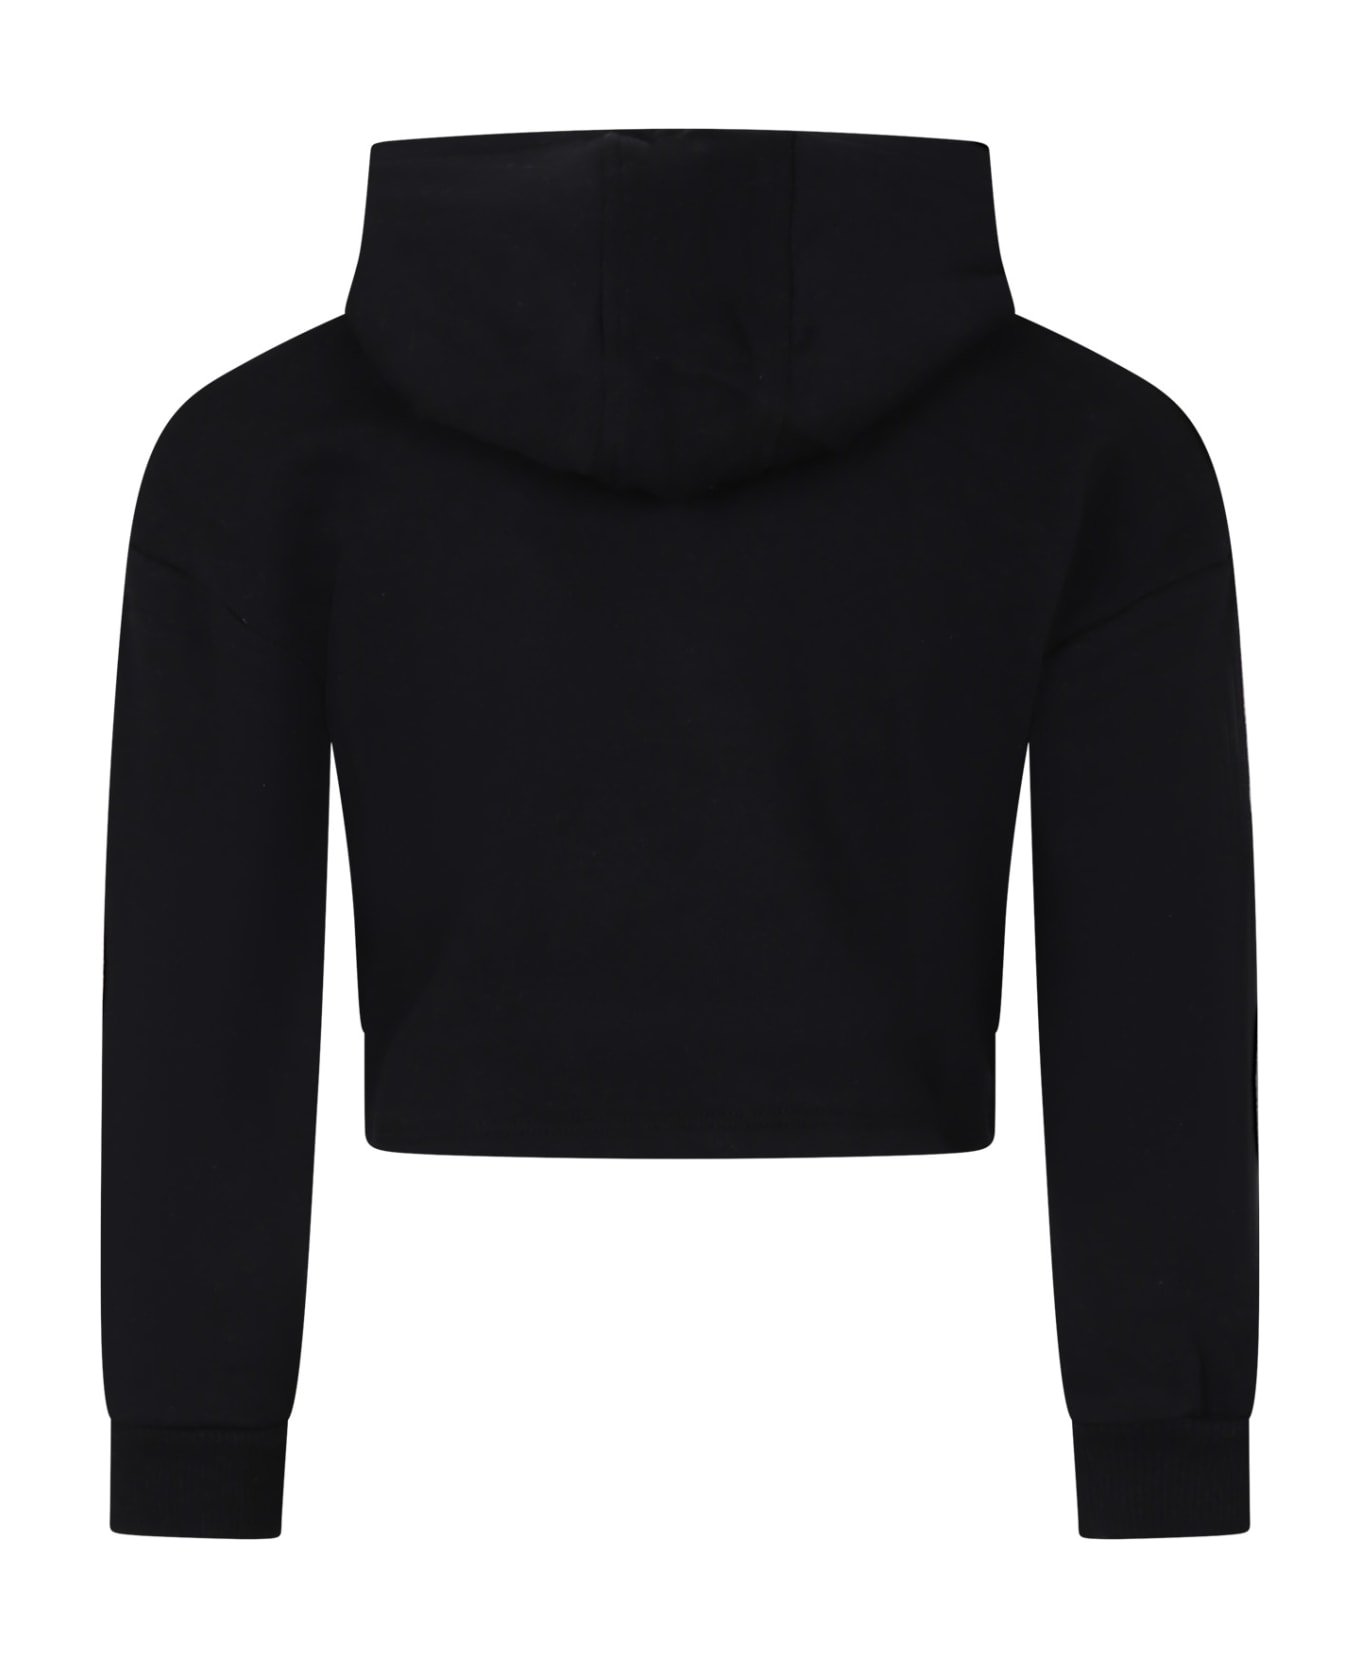 Rykiel Enfant Black Sweatshirt For Girl With Rhinestone Logo - Black ニットウェア＆スウェットシャツ